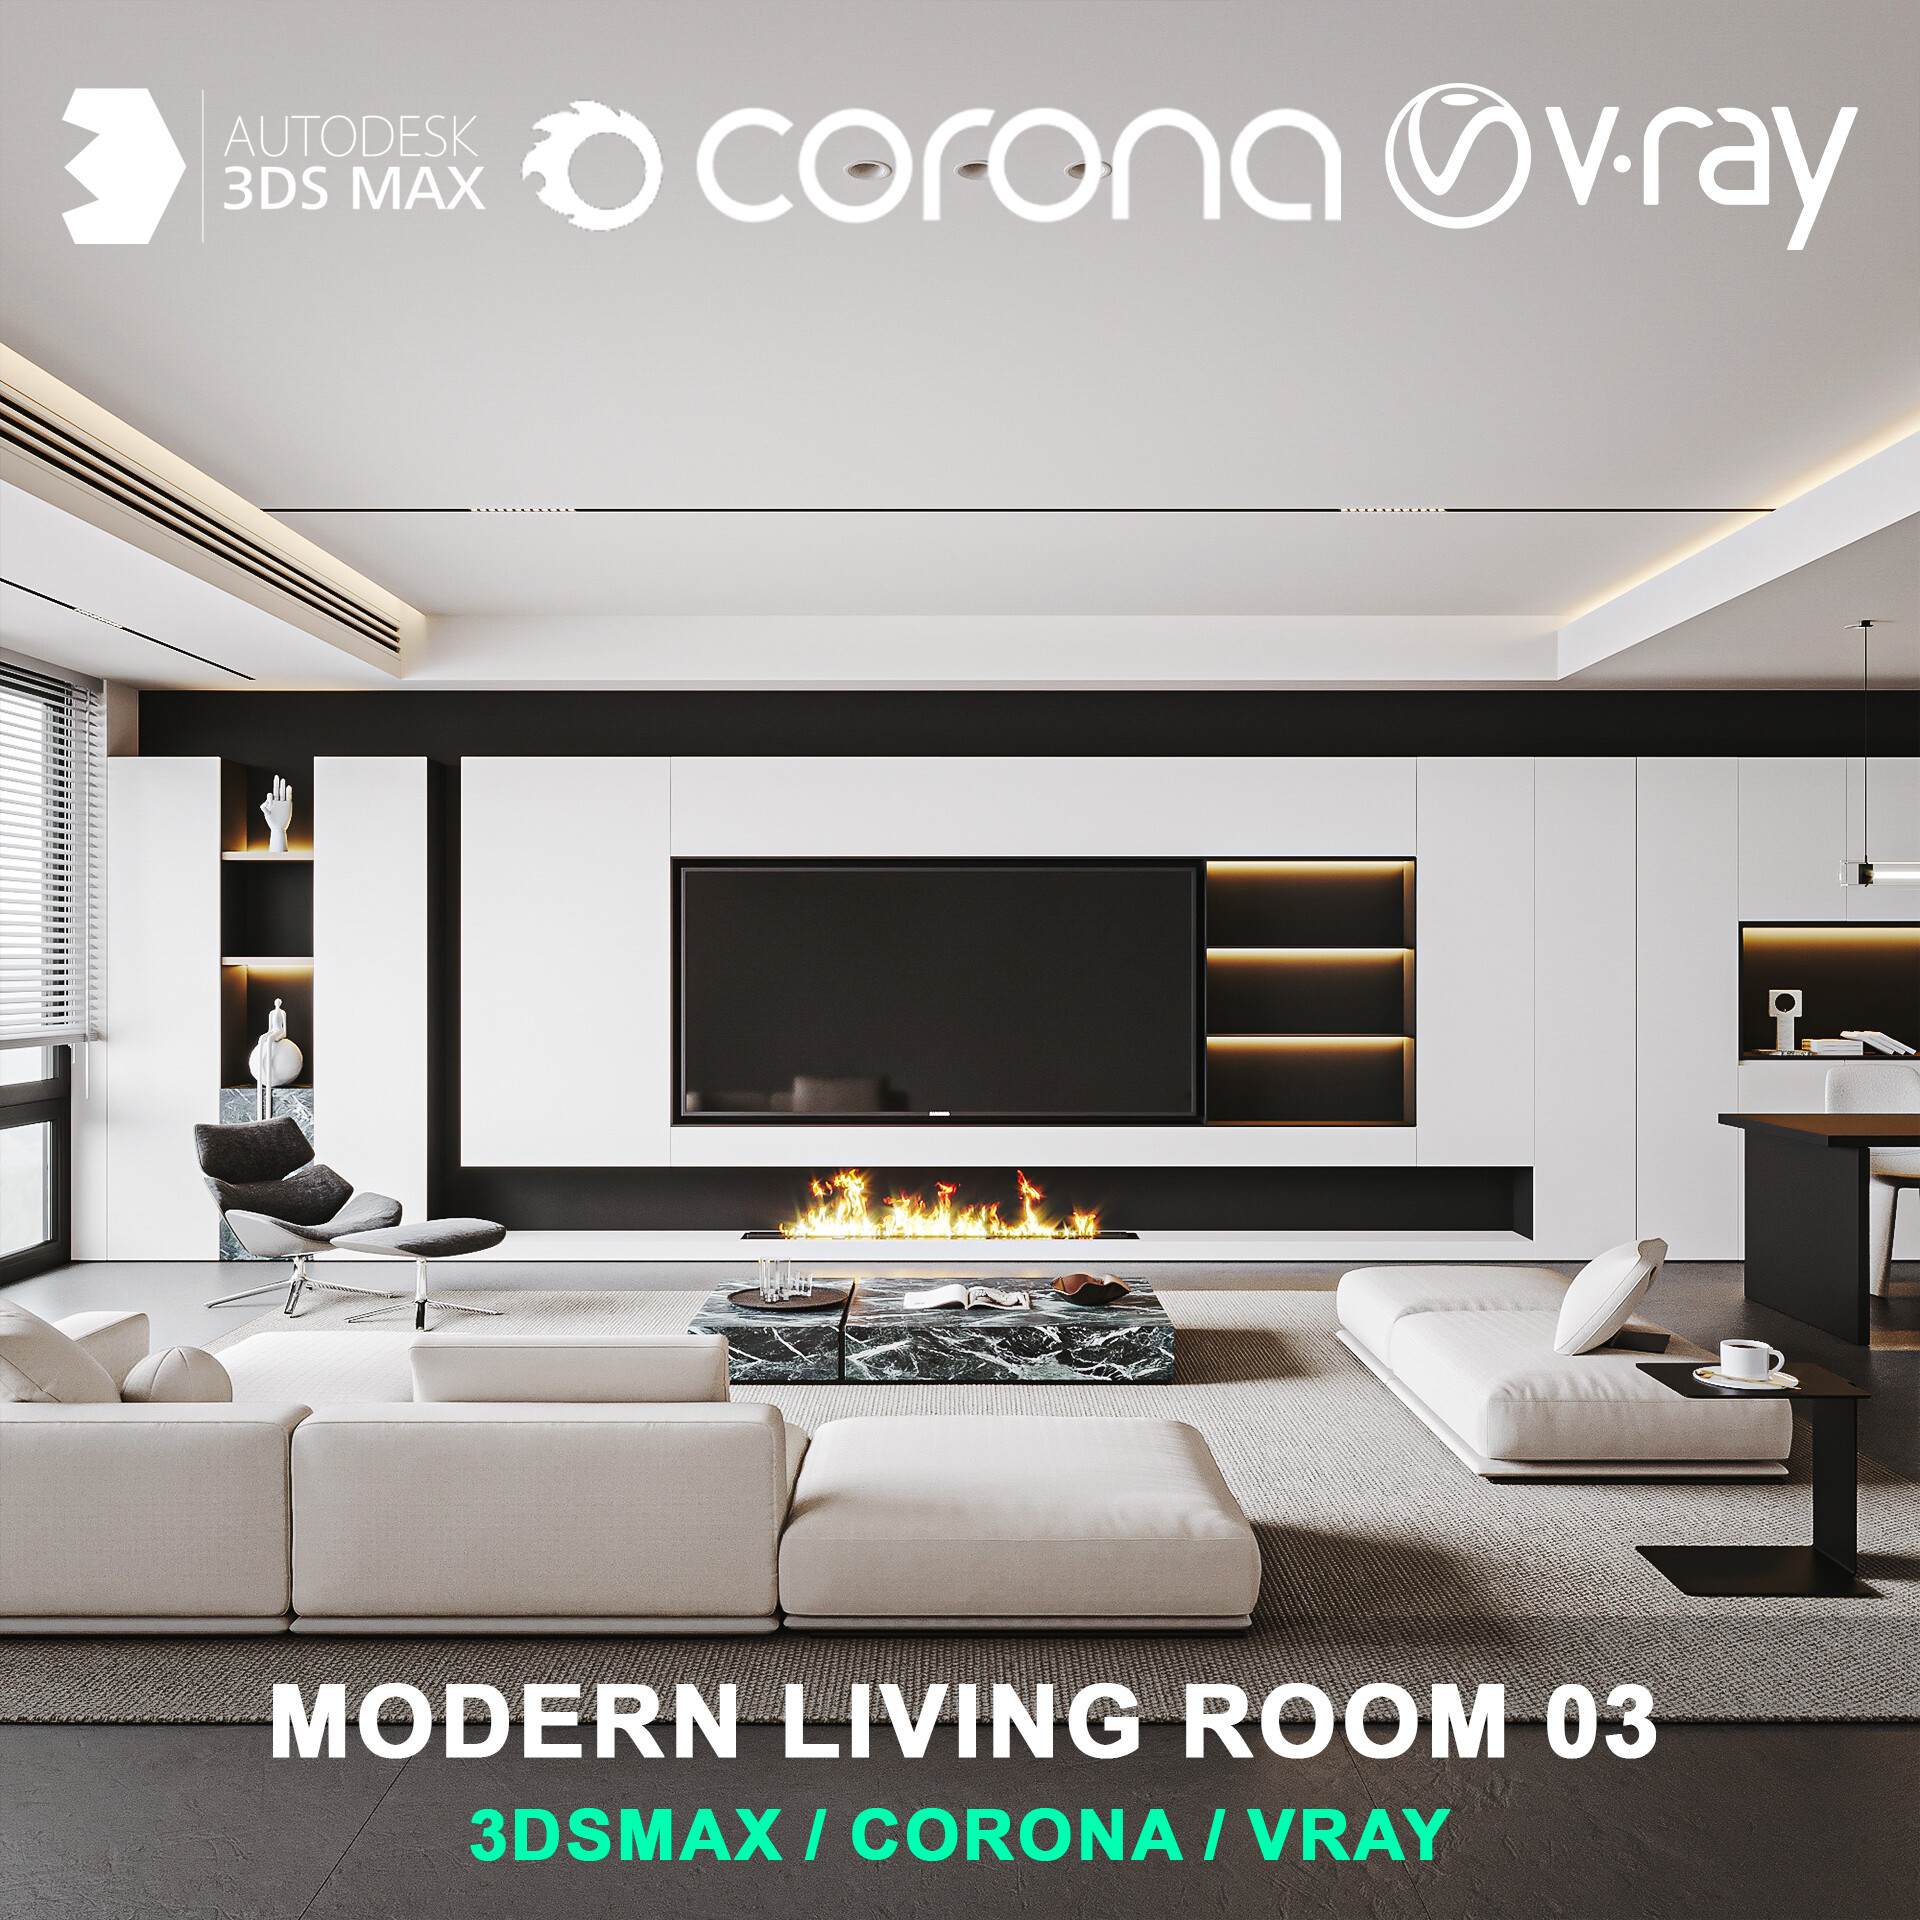 Modern living room 03 for 3DsMax